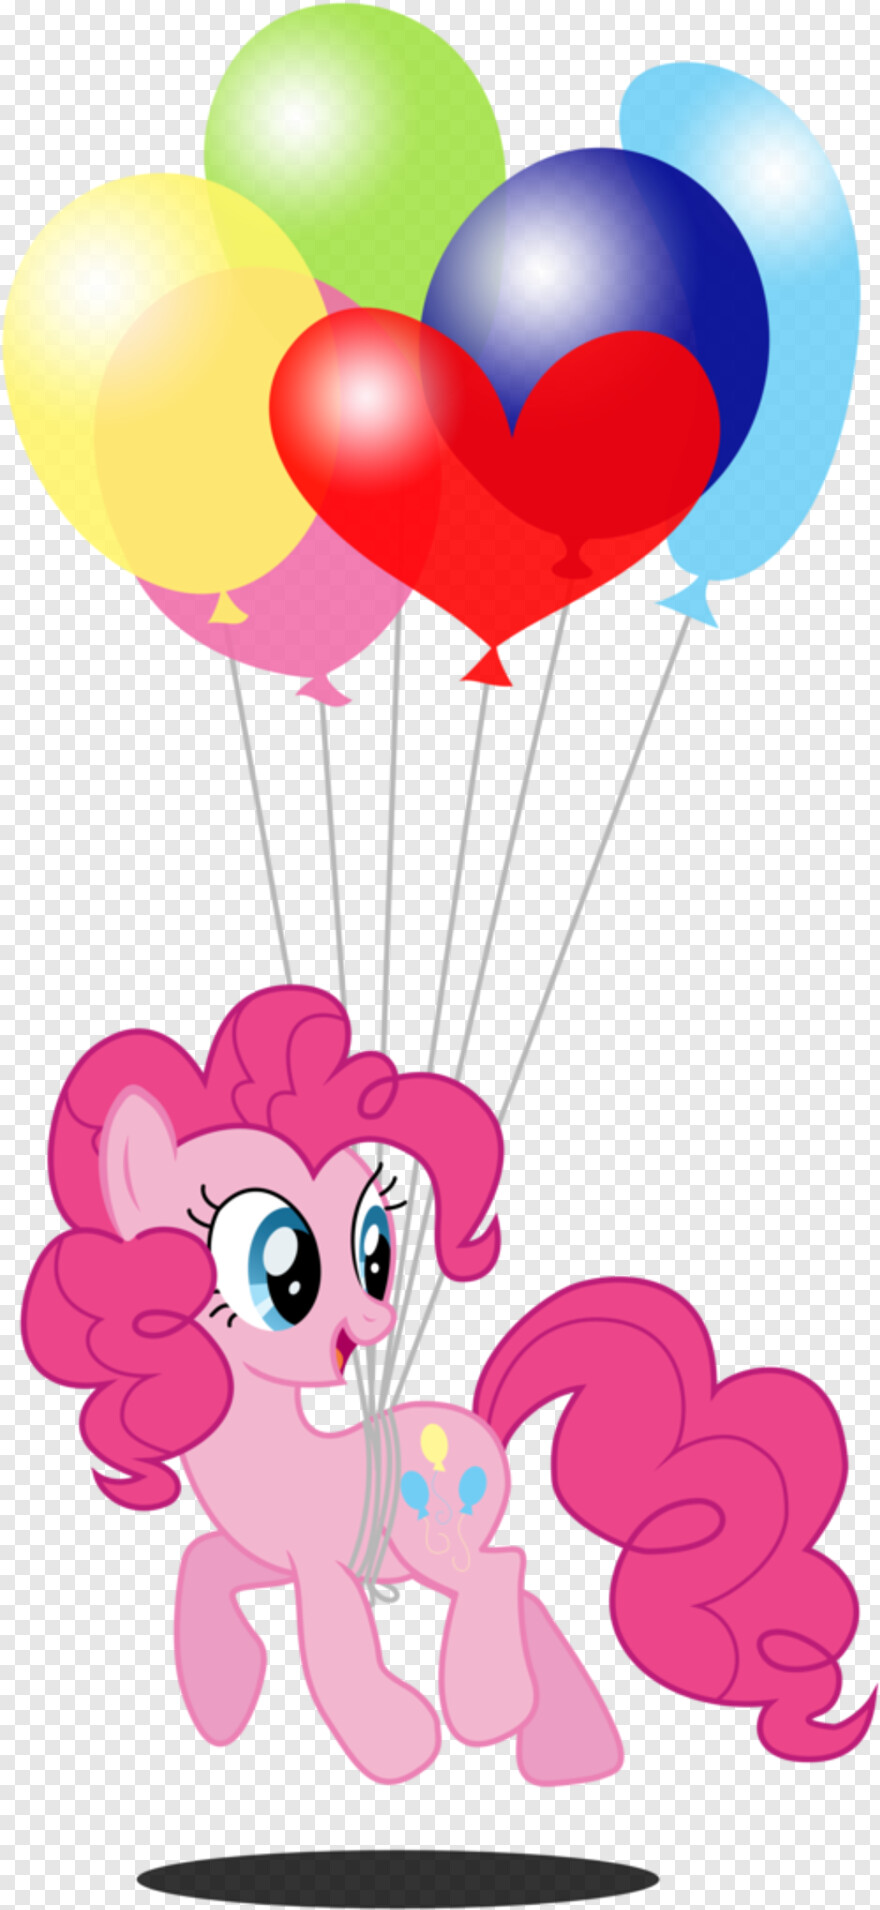  Pie, Pie Chart, Pinkie Pie, Apple Pie, Pumpkin Pie, Happy Birthday Balloons